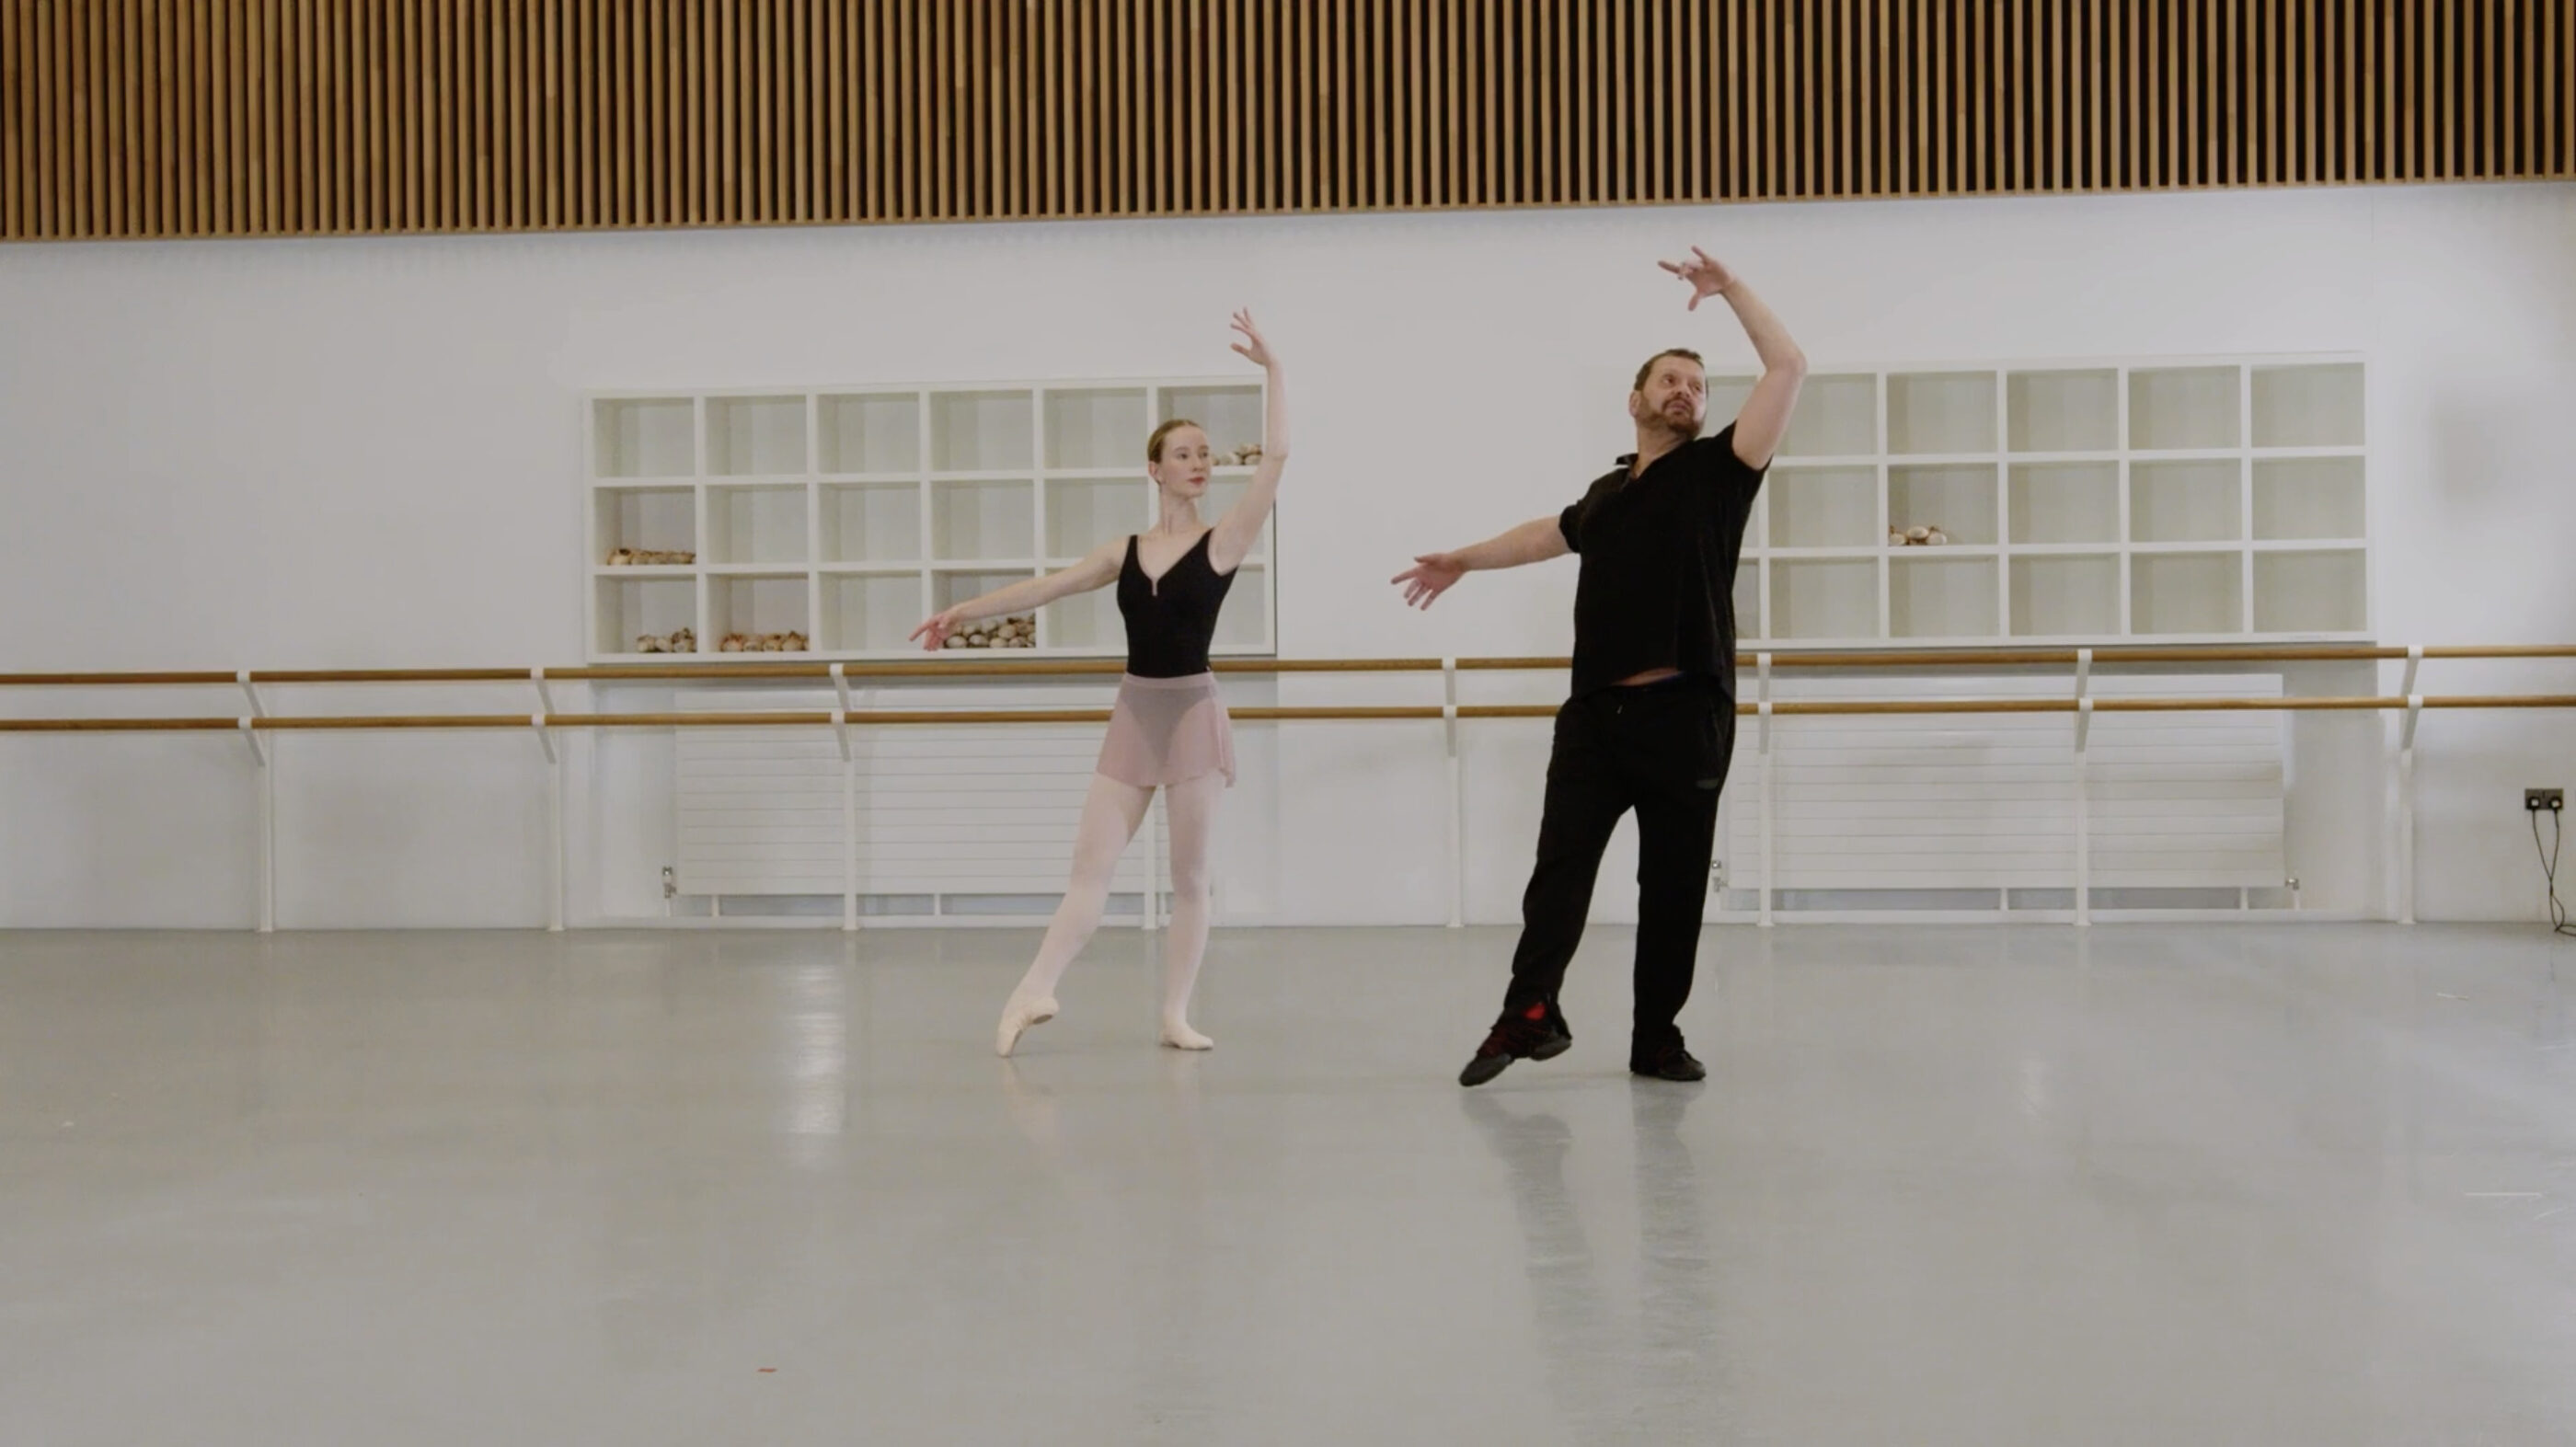 A ballet teacher and a demonstrator are doing a tendu en croisé in a dance studio.